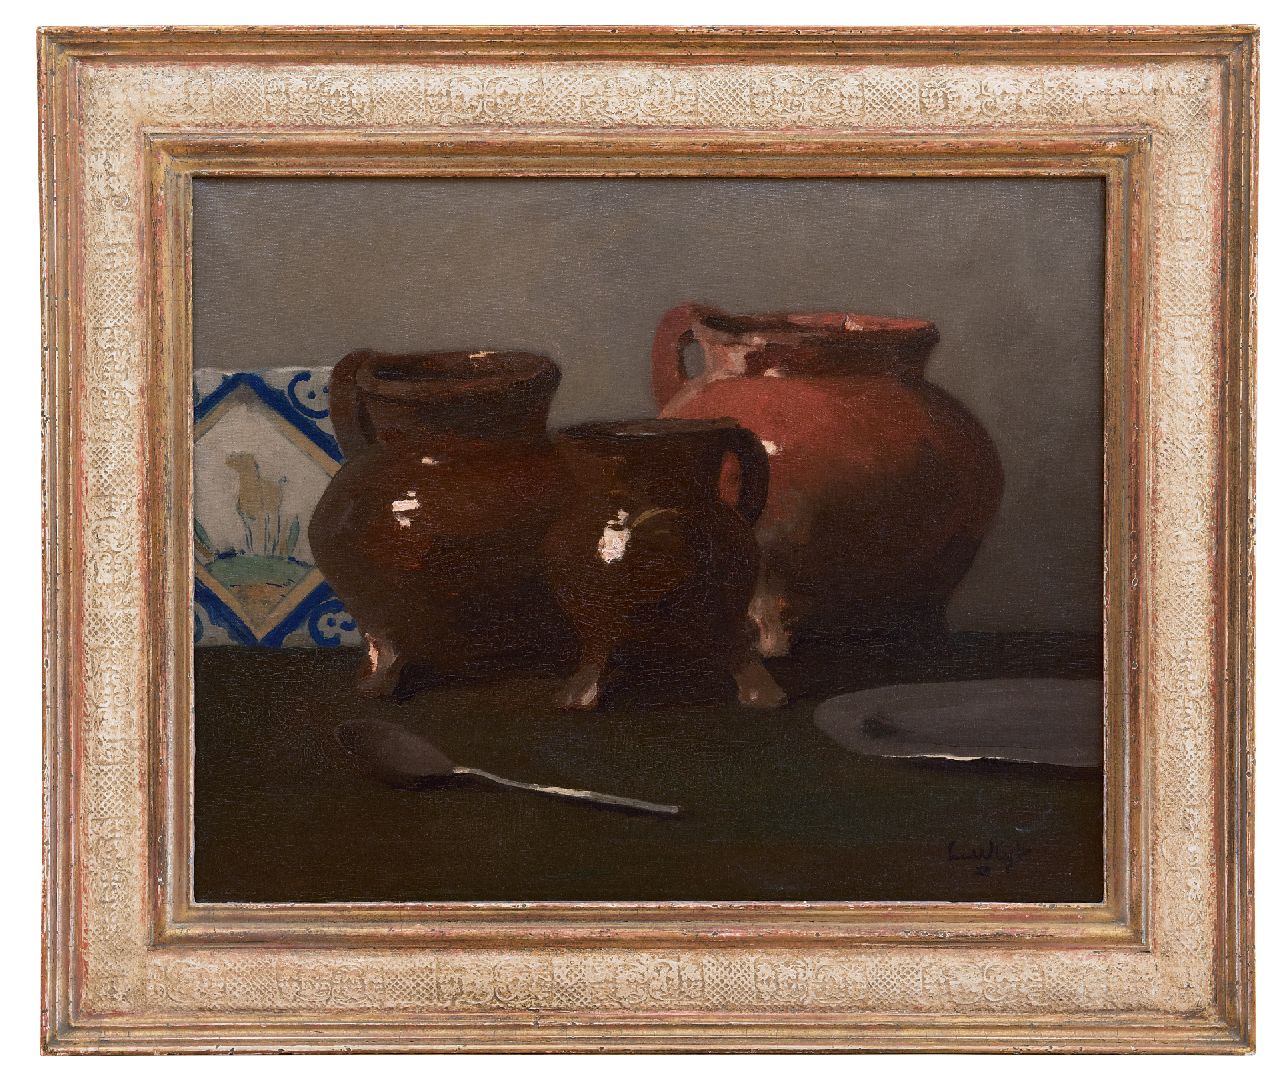 Vlist L. van der | Leendert van der Vlist | Schilderijen te koop aangeboden | Stilleven met loodglazuur potten, olieverf op doek 40,2 x 50,2 cm, gesigneerd rechtsonder